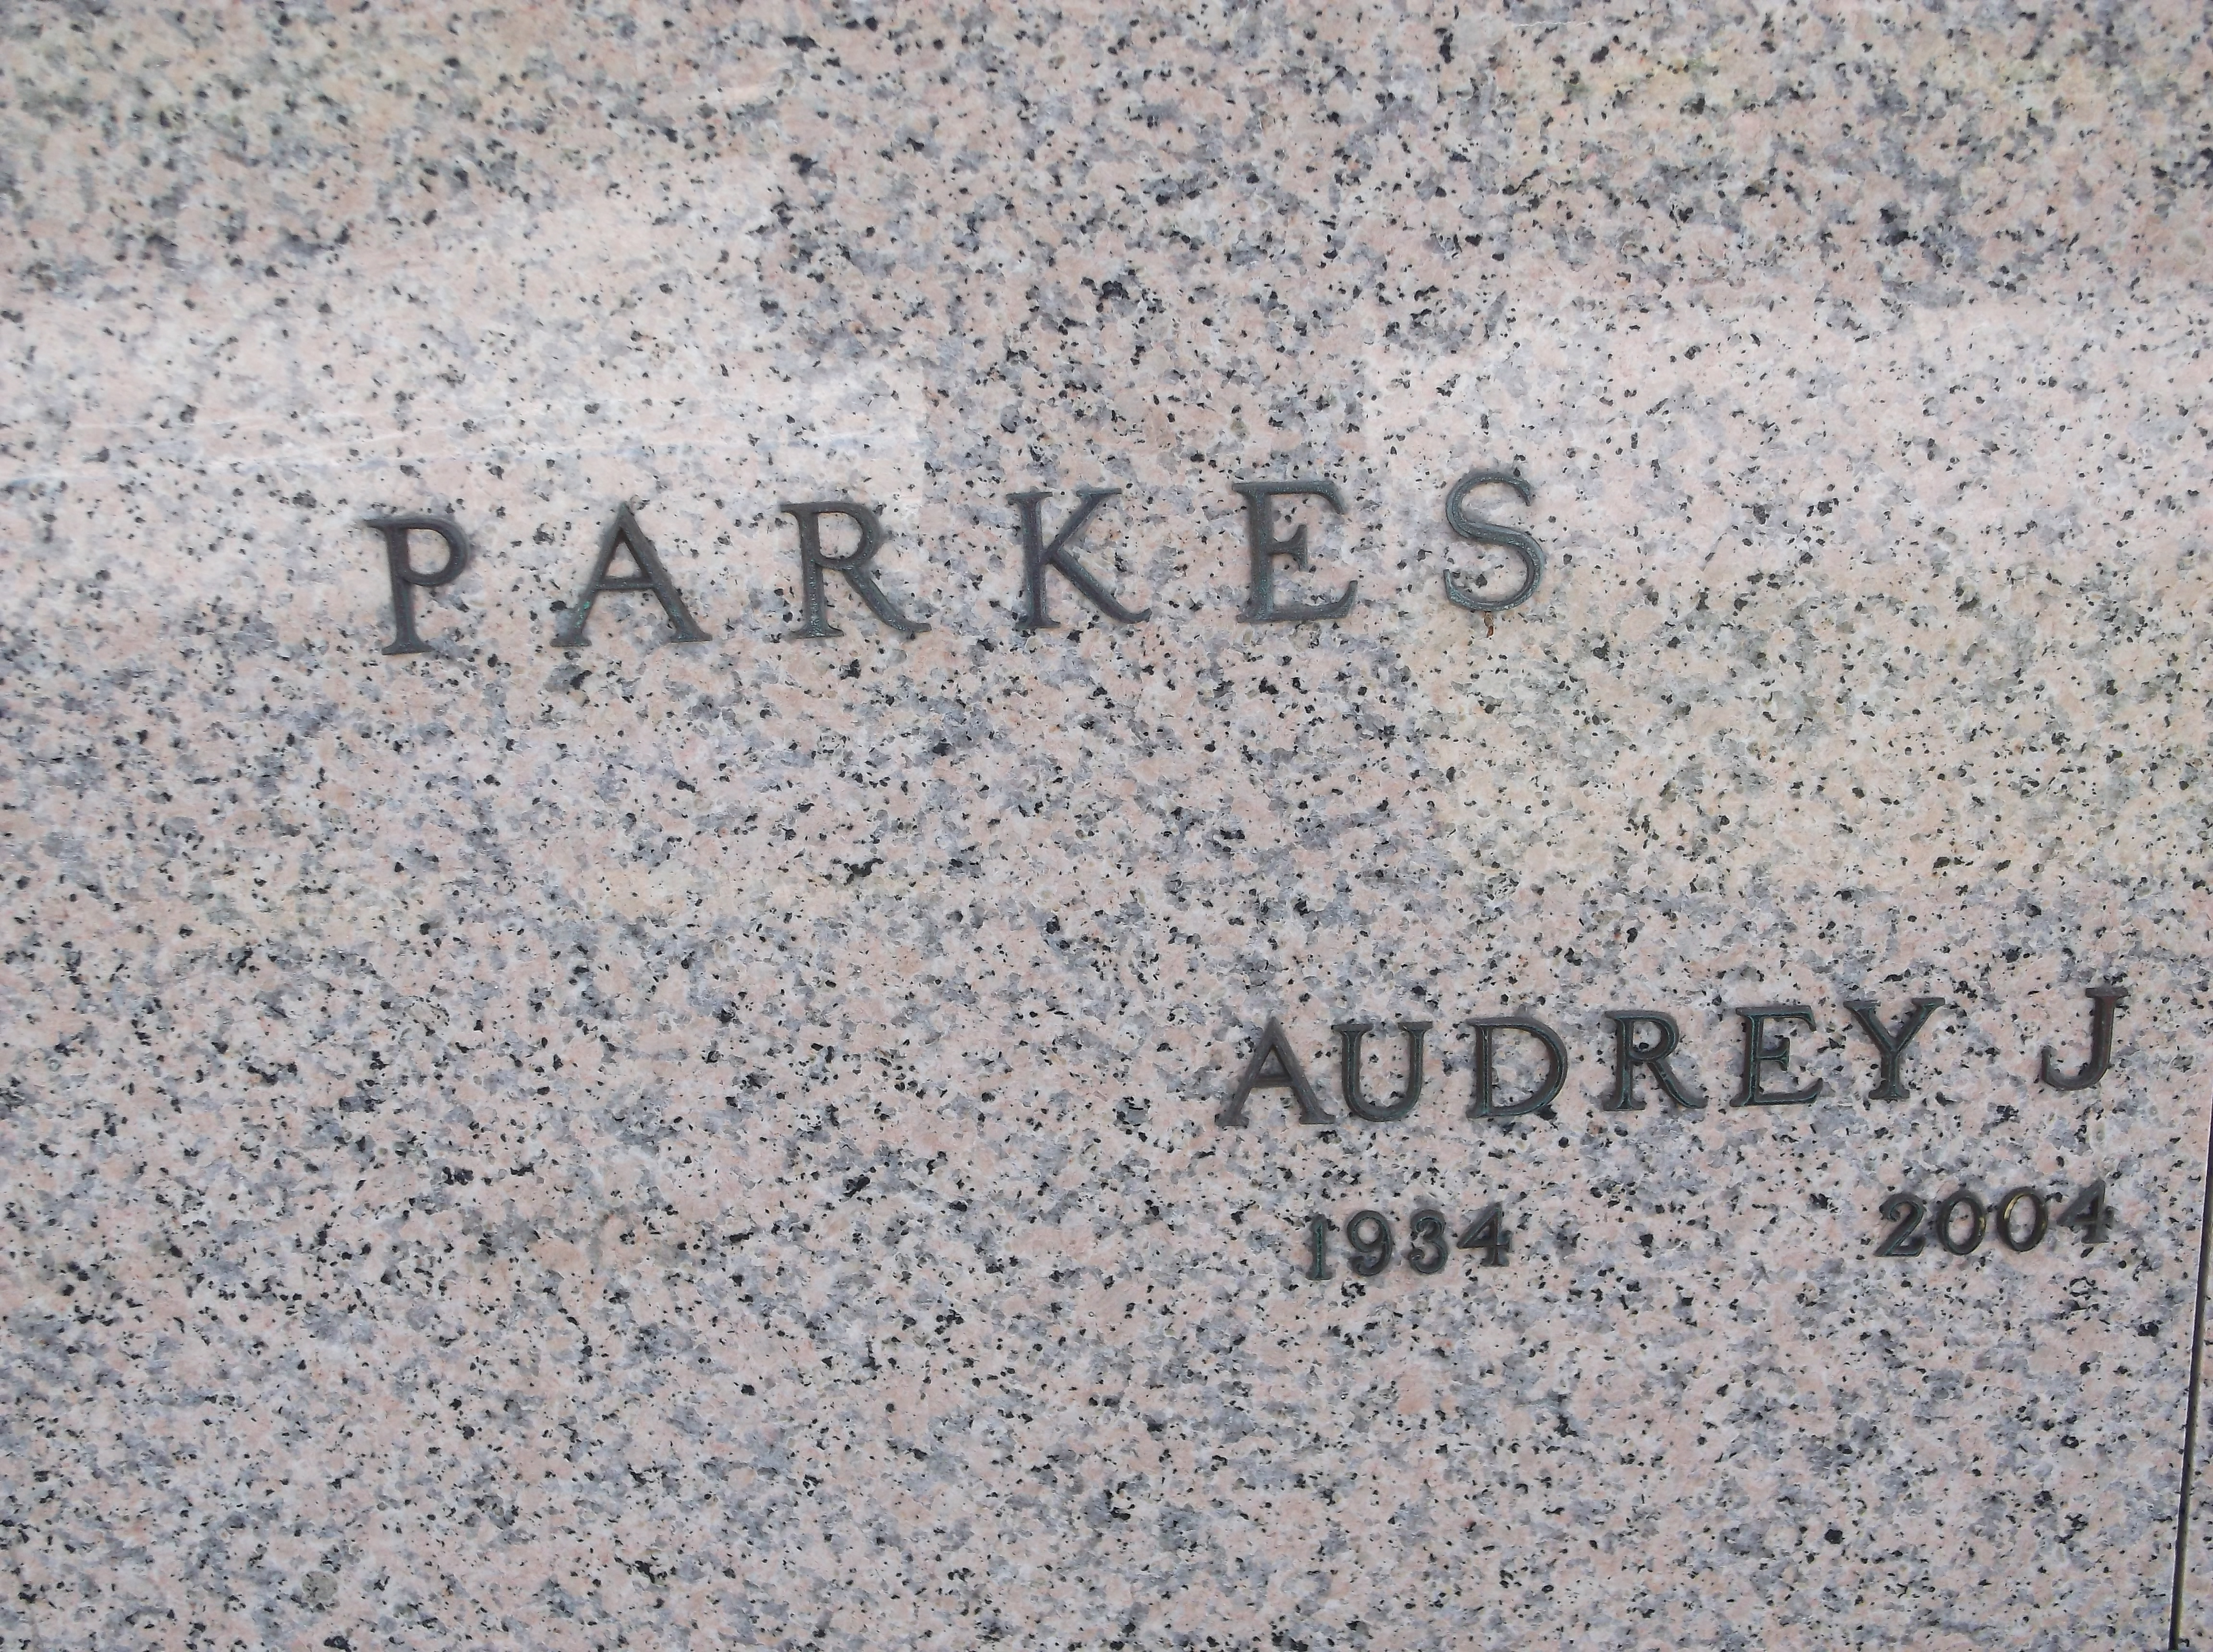 Audrey J Parkes